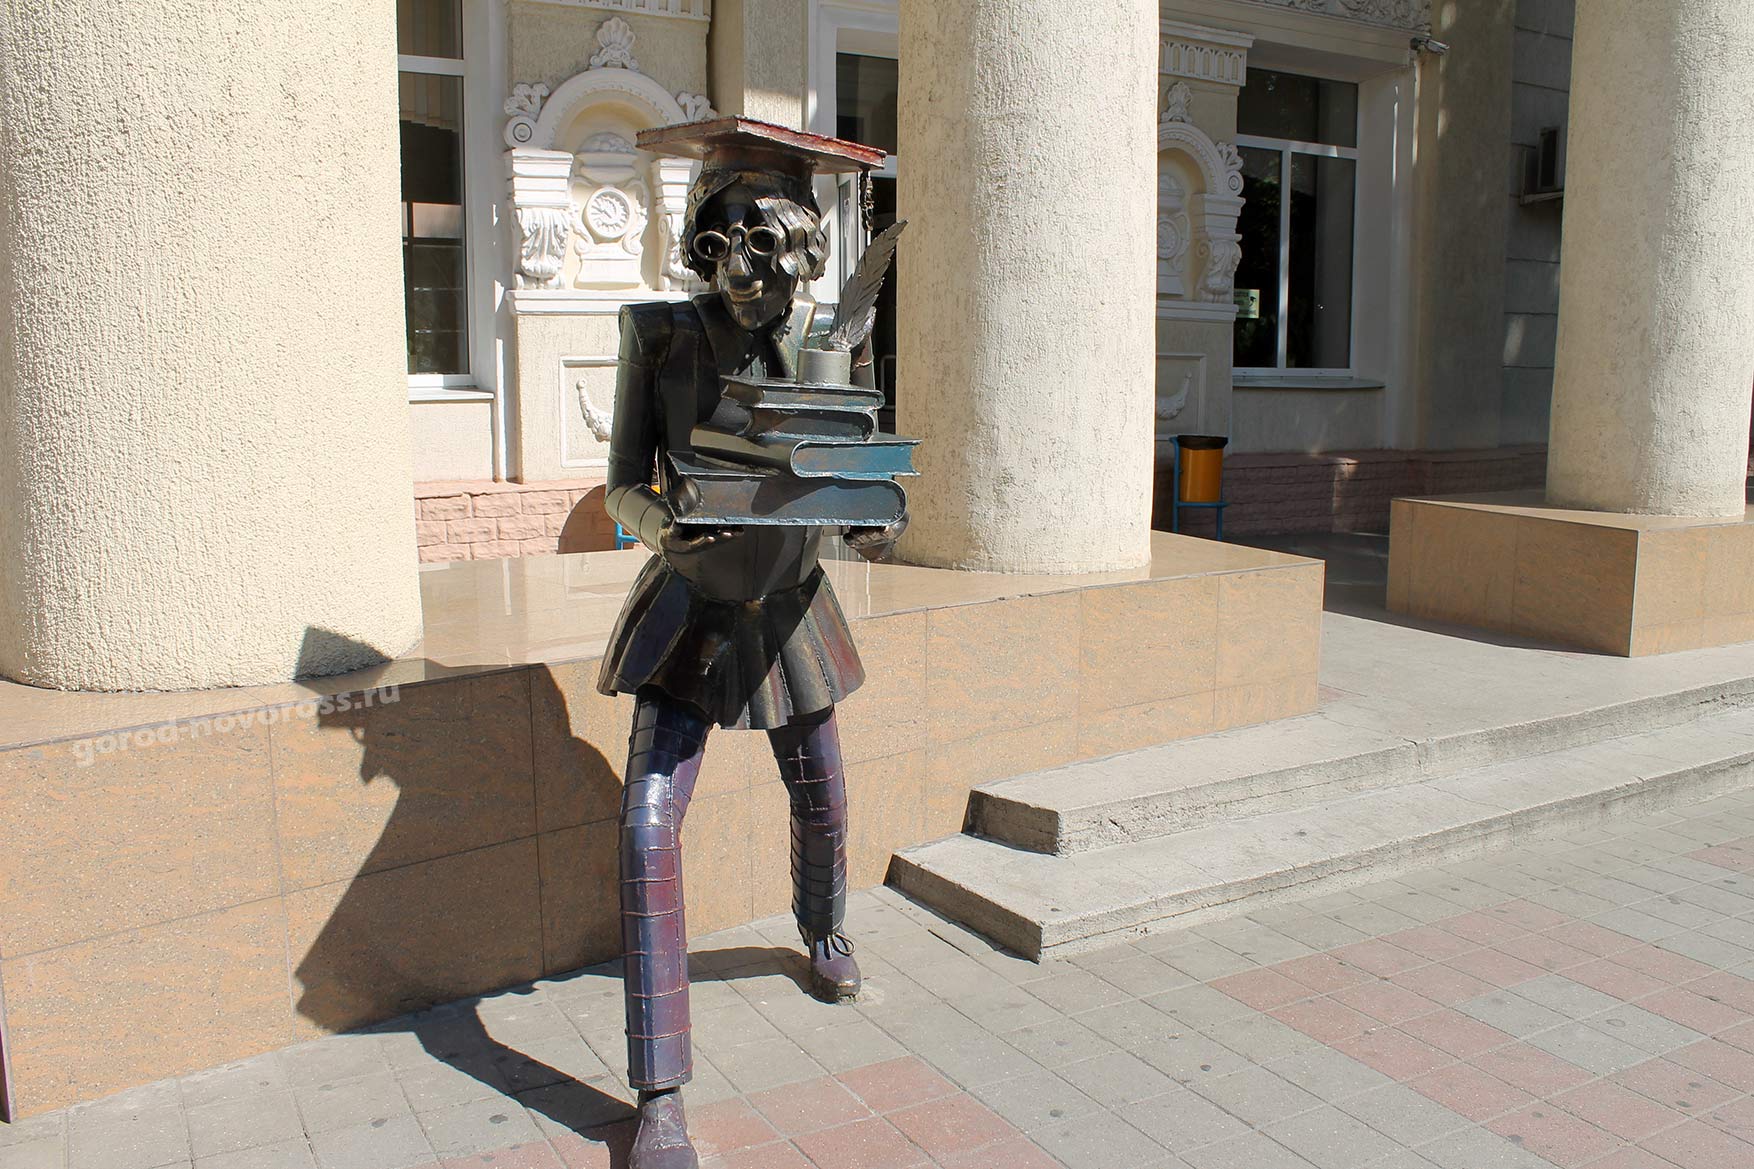 Скульптура студента возле Колледжа строительства. Новороссийск. Лето 2013